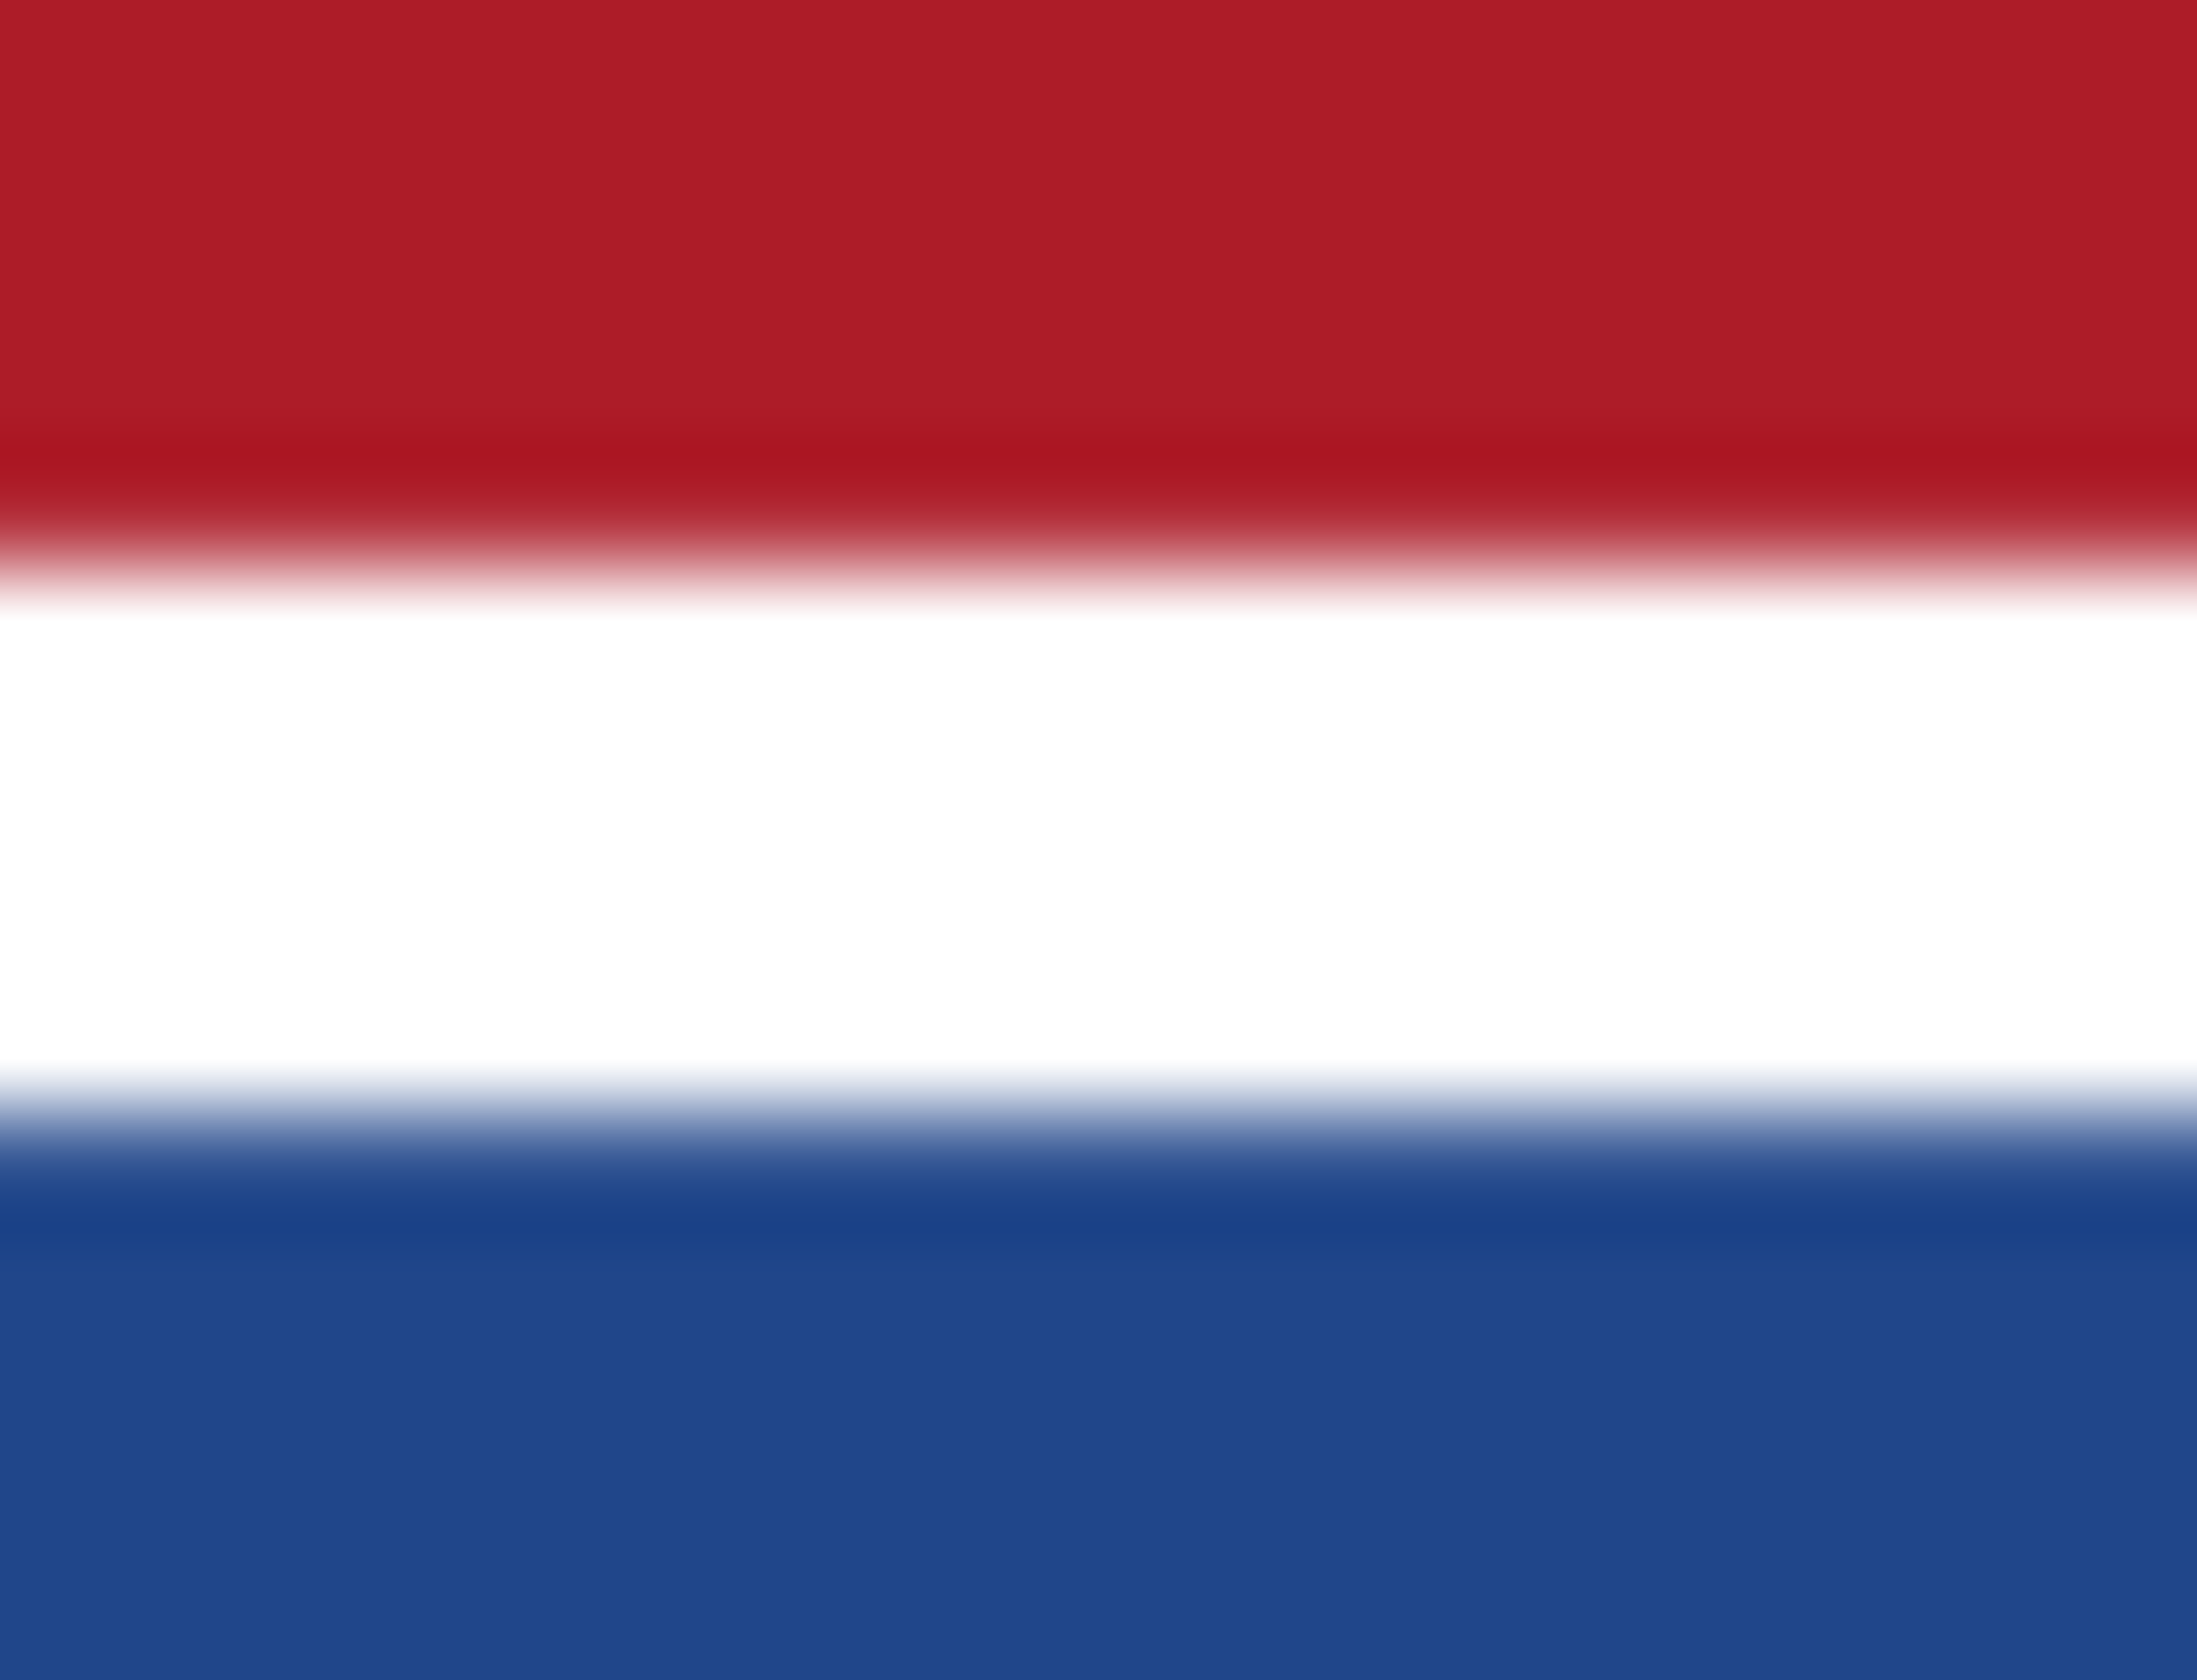 Netherlands | Nederlands